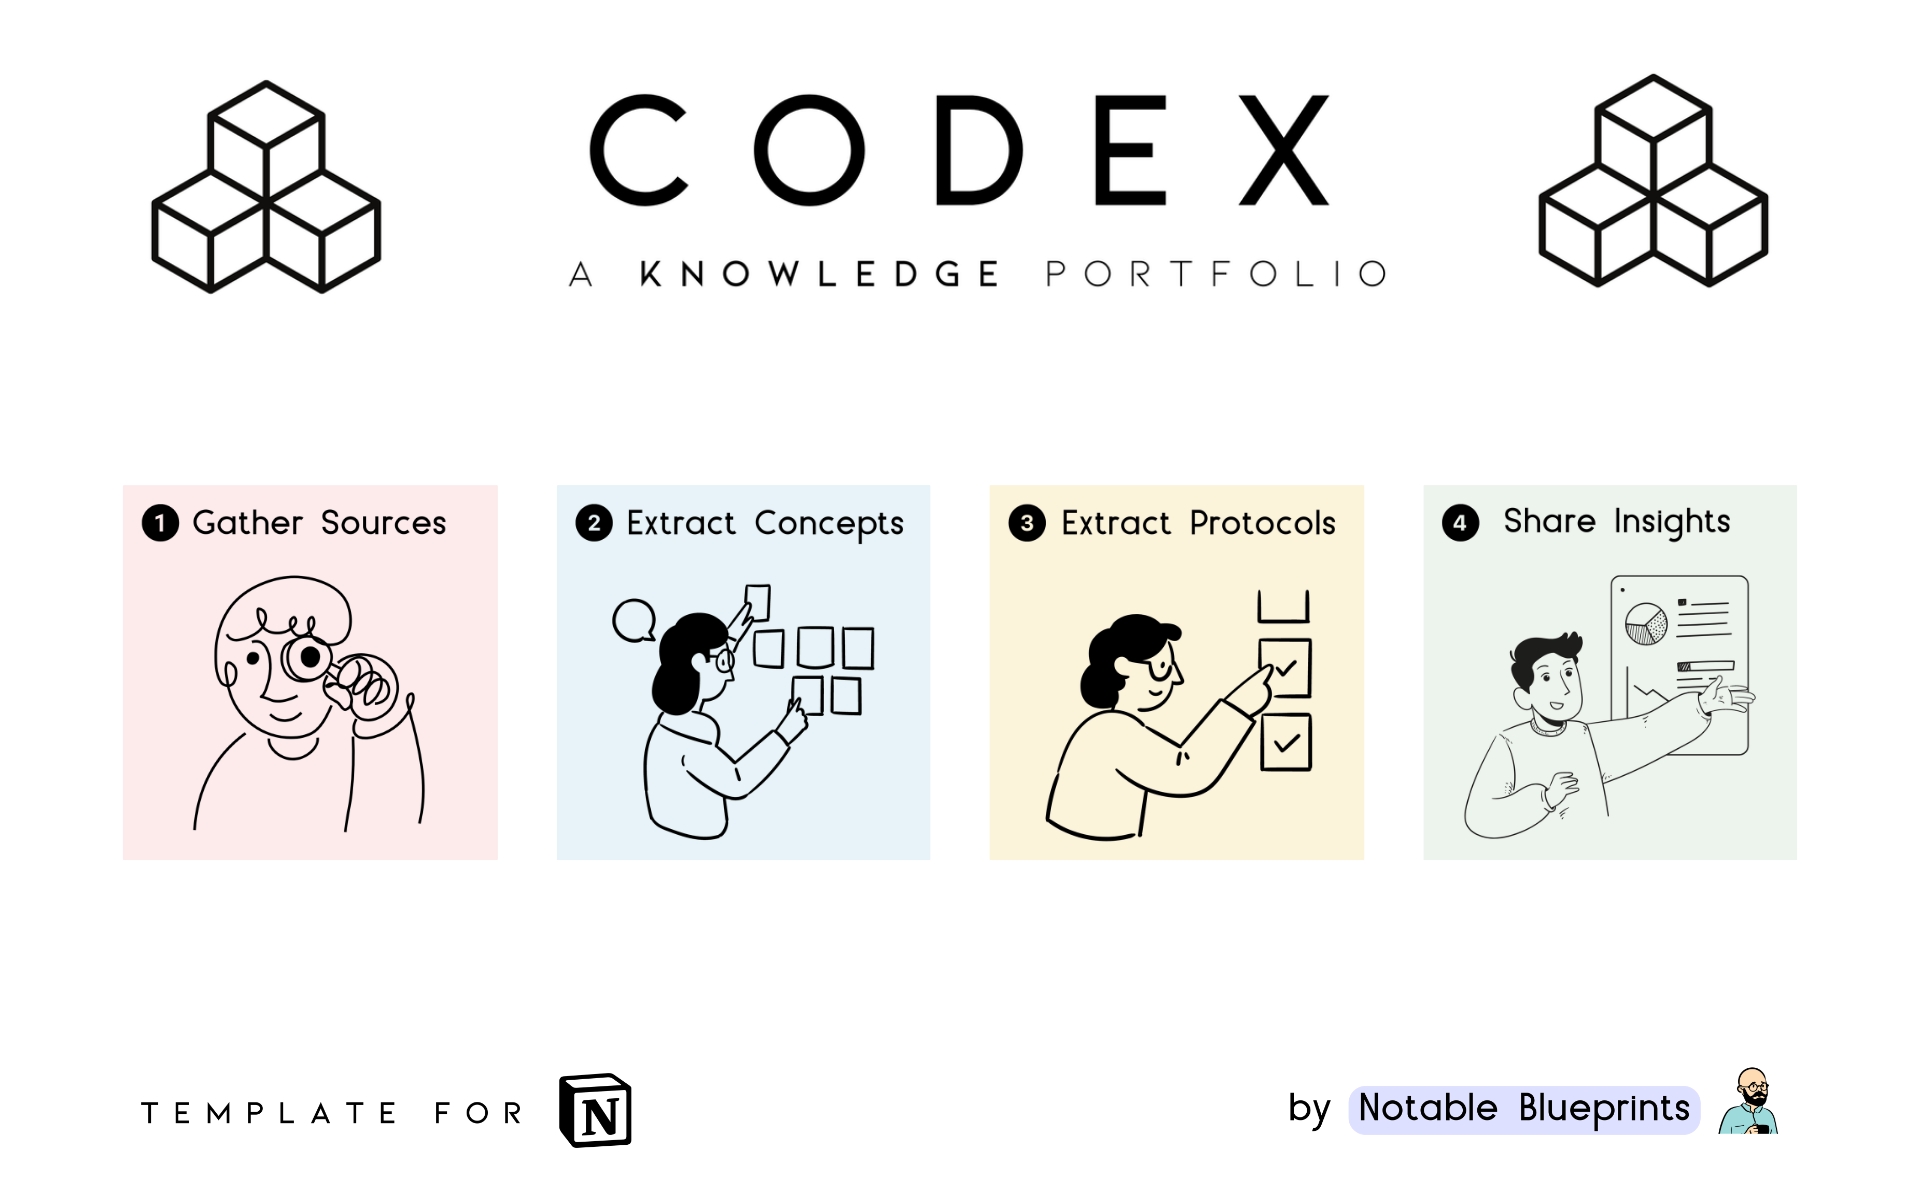 Uma prévia do modelo para ⫷ CODEX ⫸ A Knowledge Portfolio